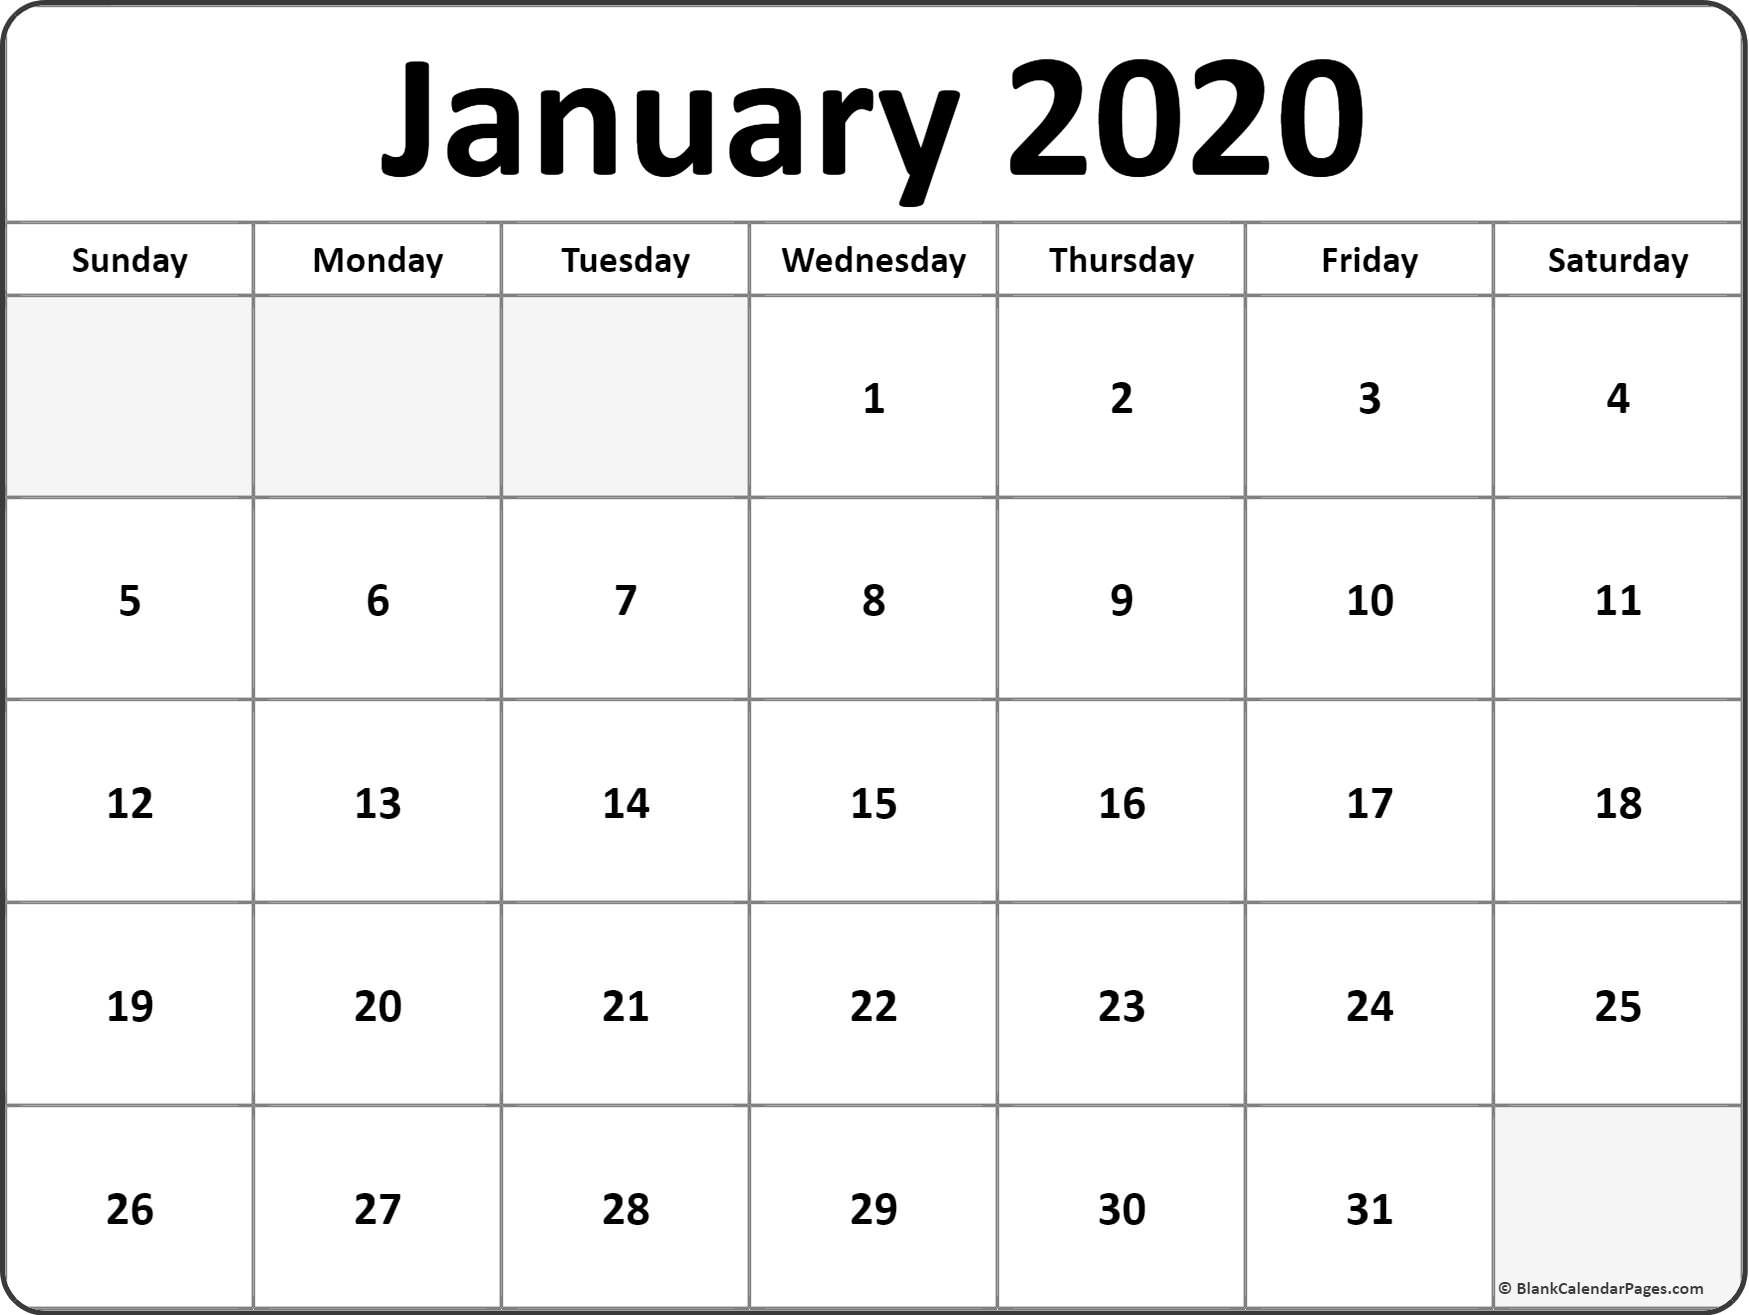 January 2020 blank calendar templates